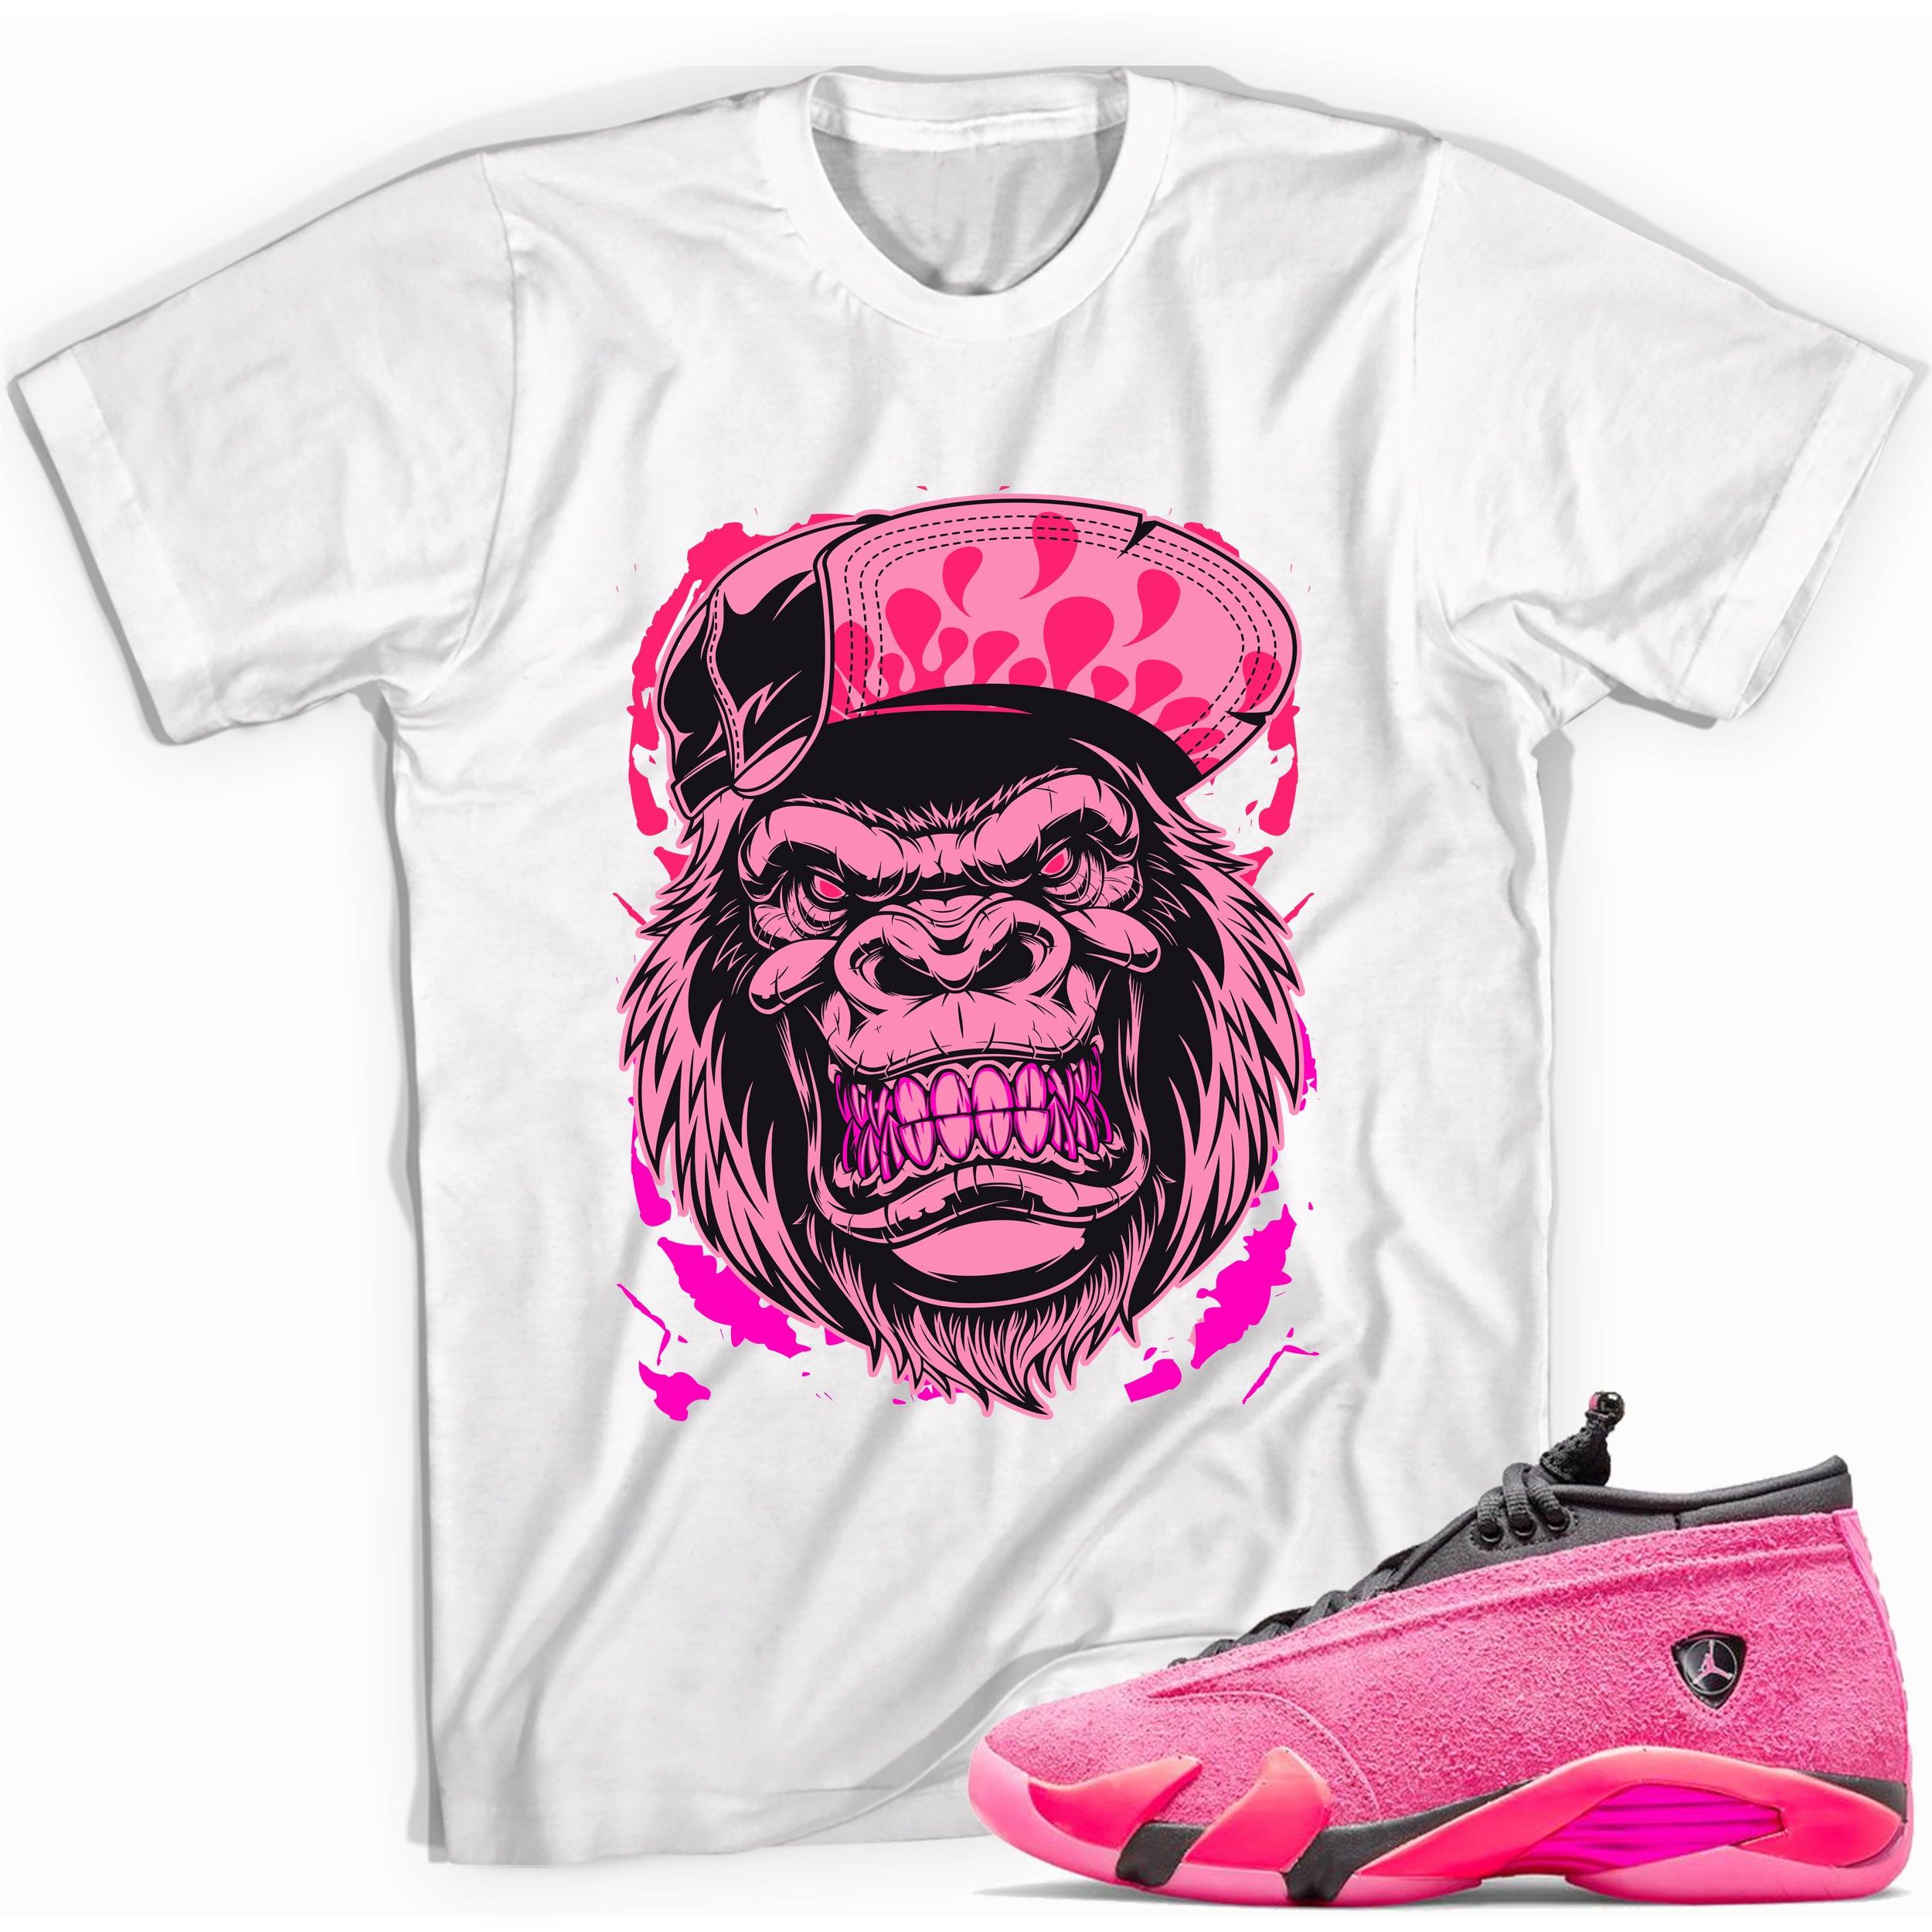 Gorilla Beast Shirt AJ 14 Low Shocking Pink photo